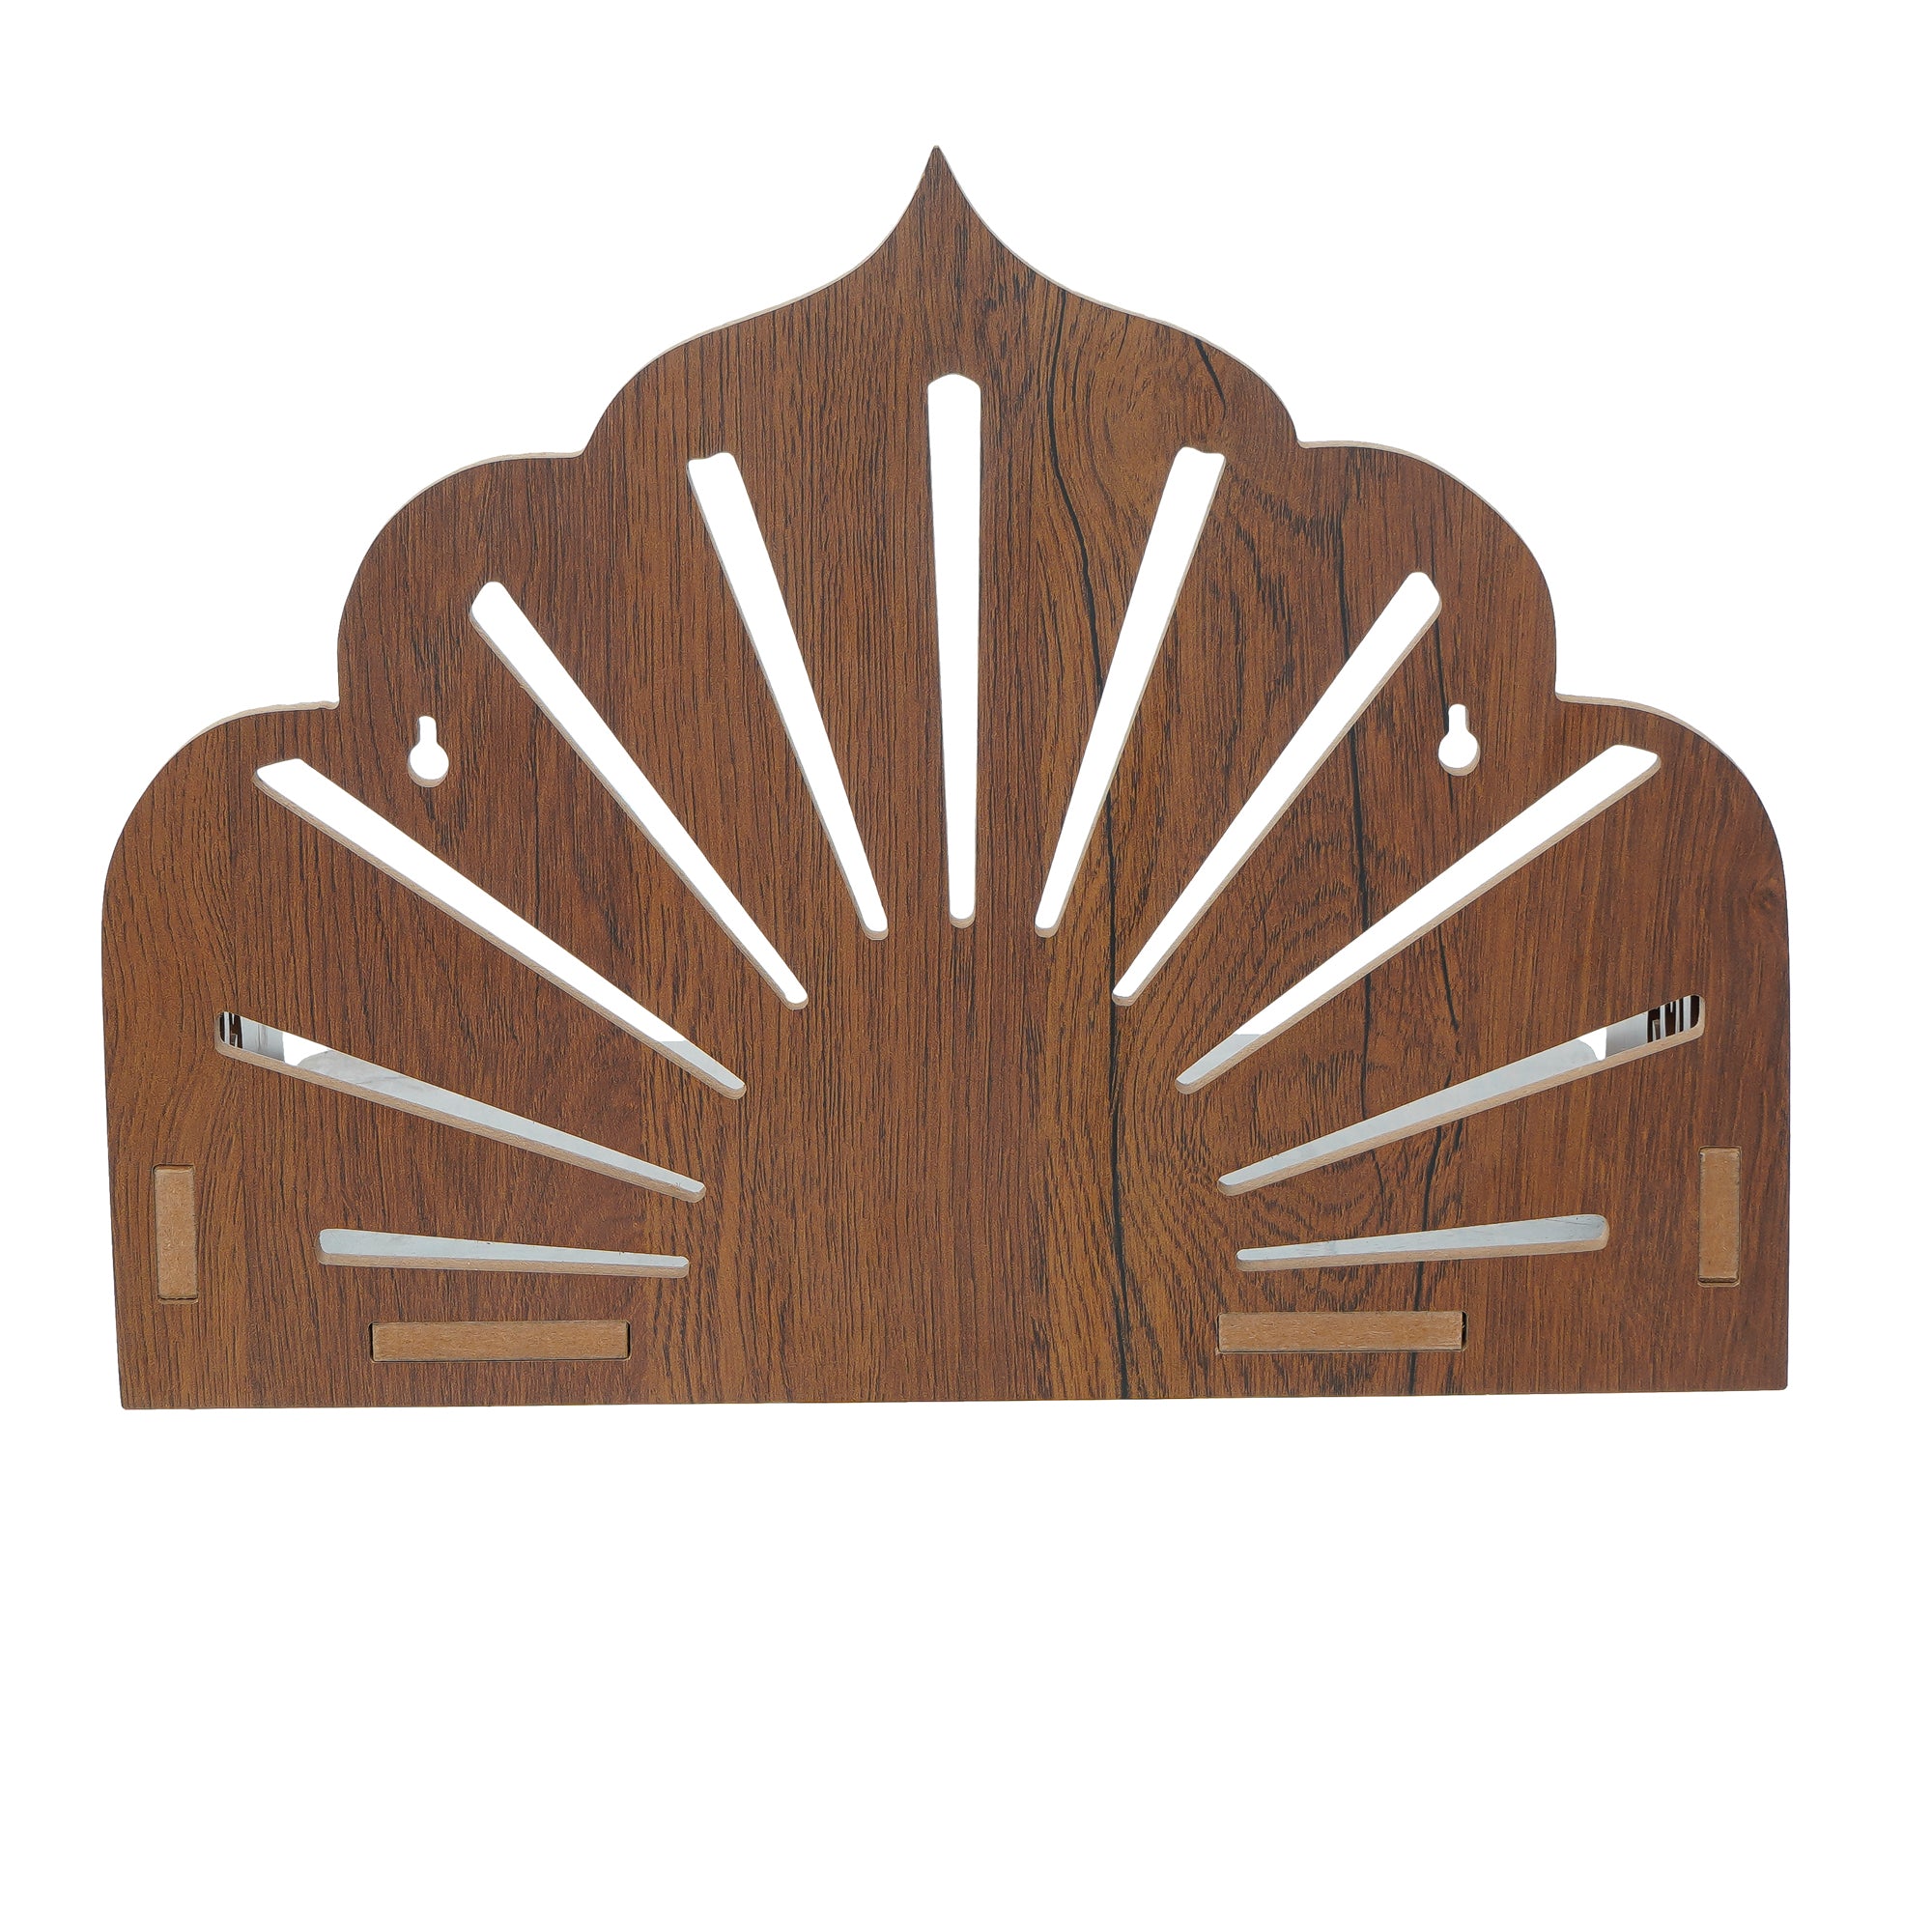 Sunrays Design Laminated Wood Pooja Temple/Mandir 6